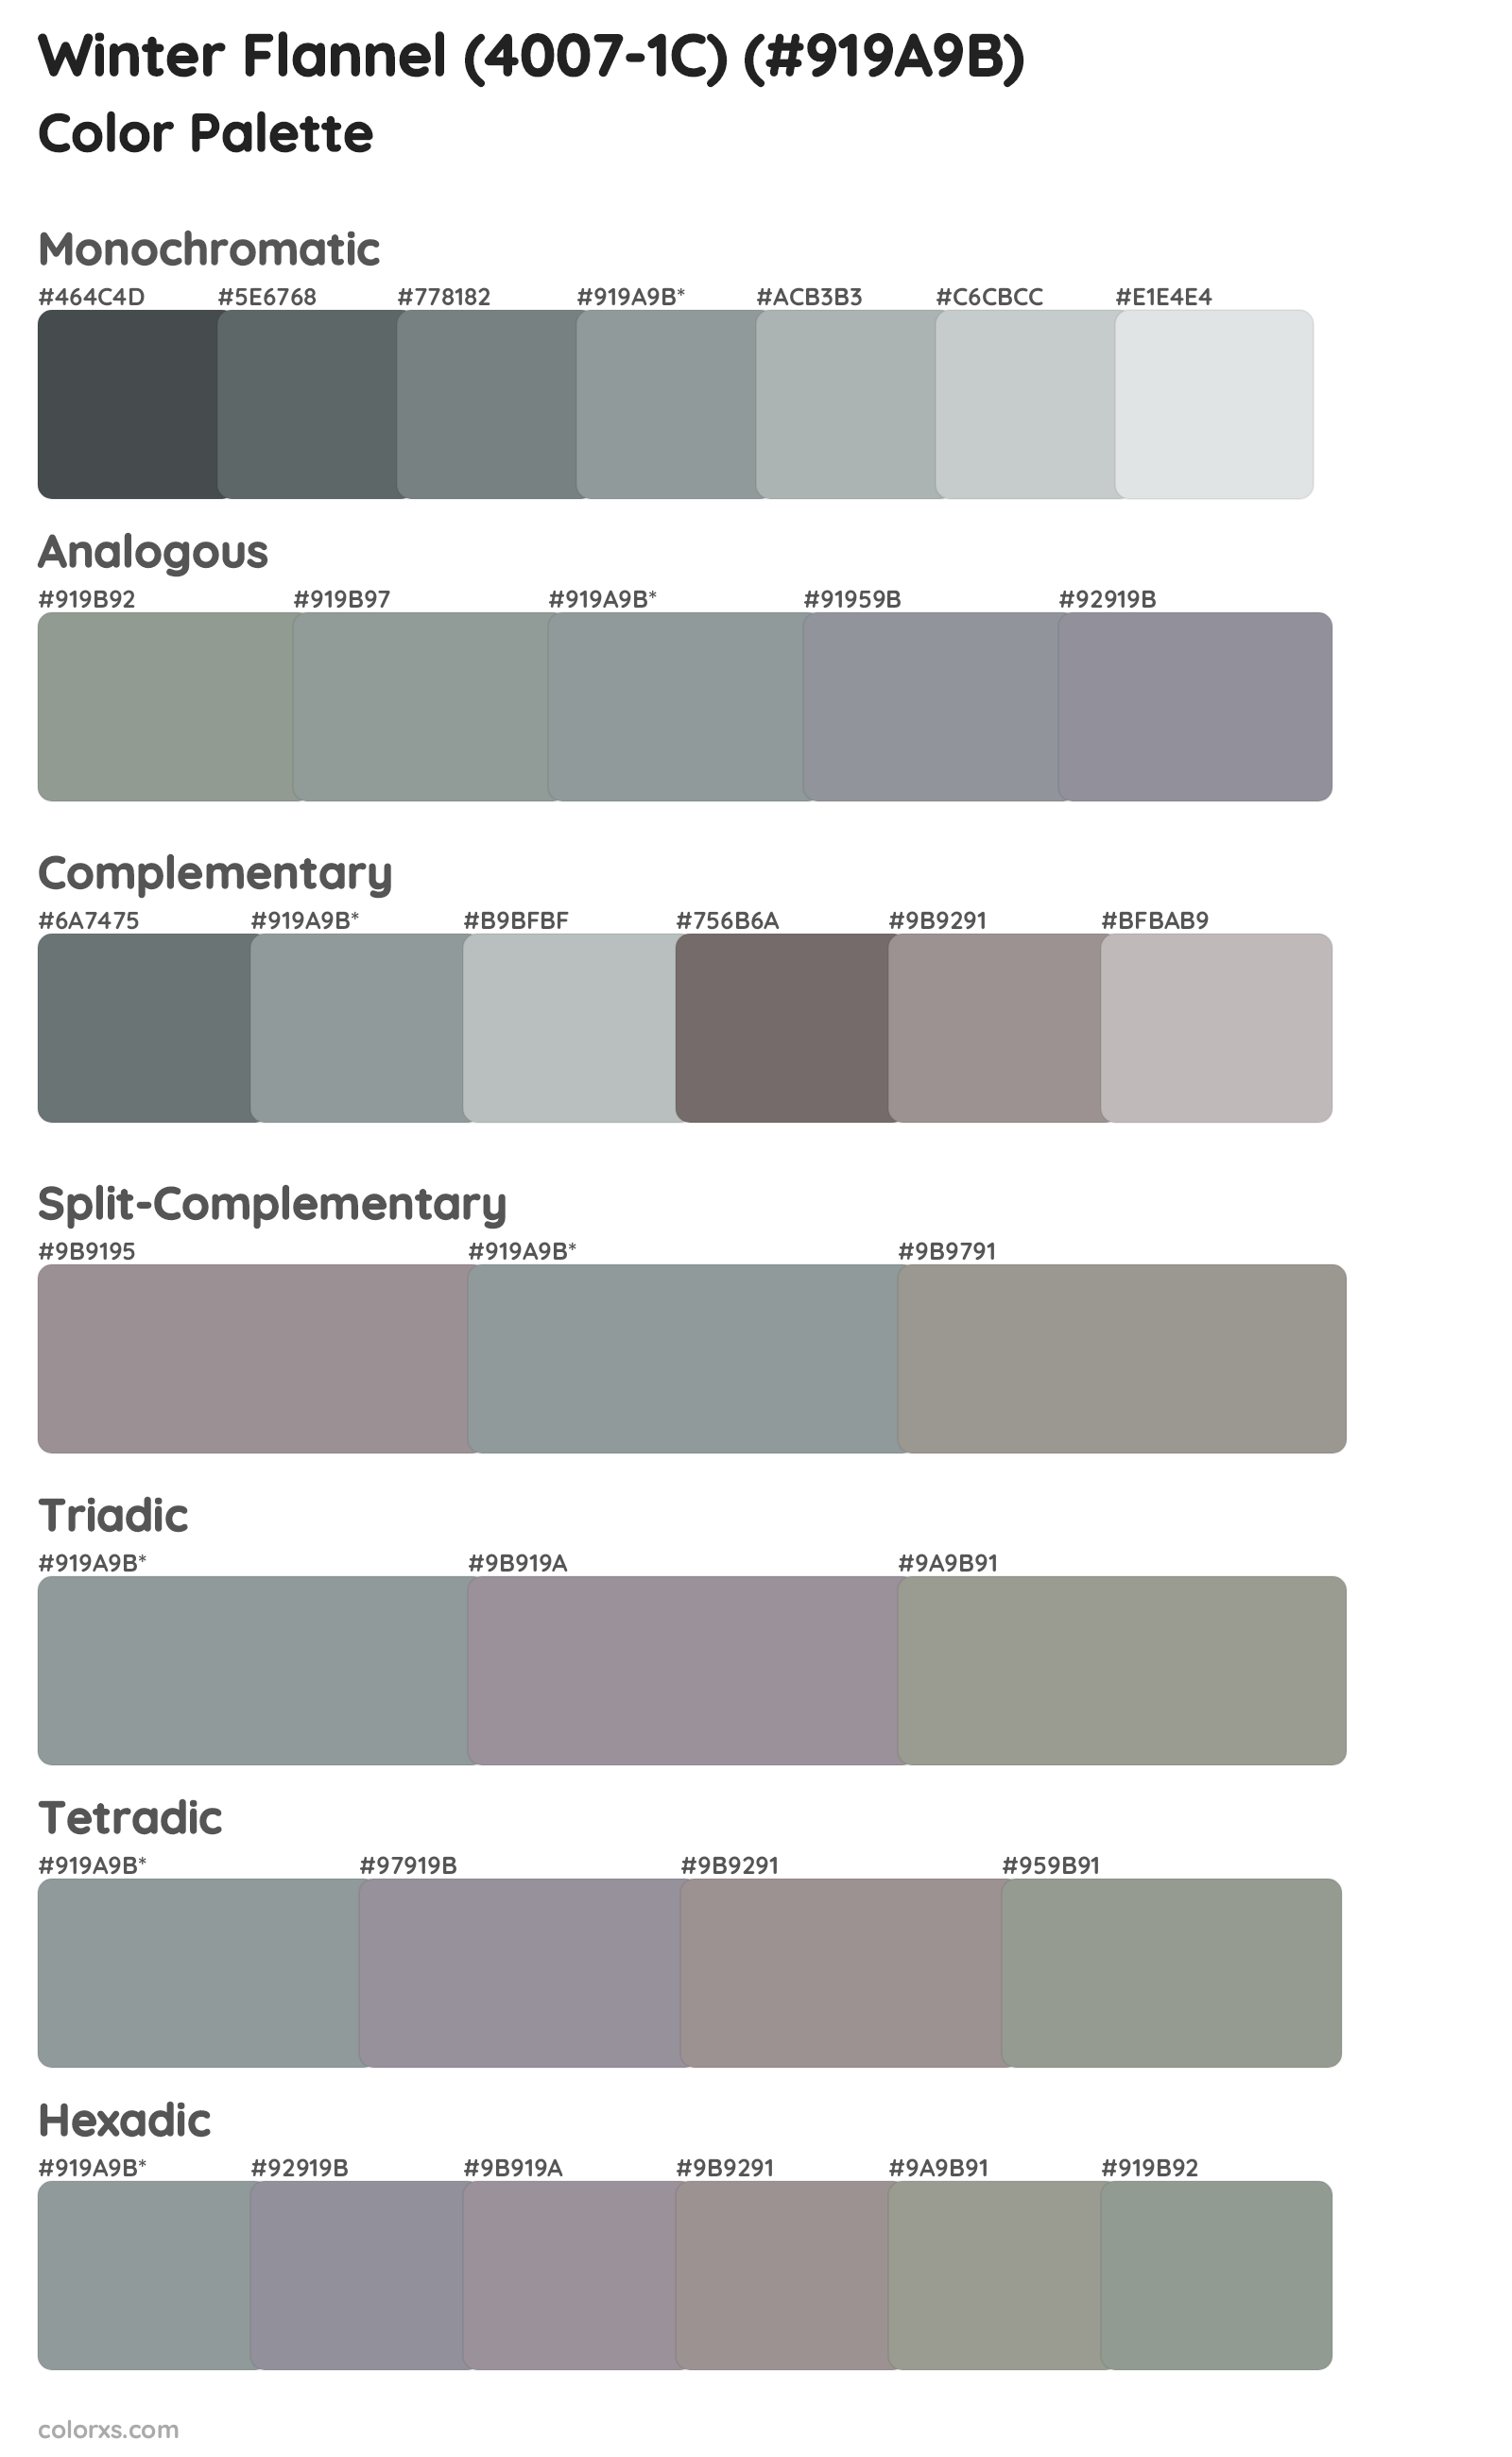 Winter Flannel (4007-1C) Color Scheme Palettes